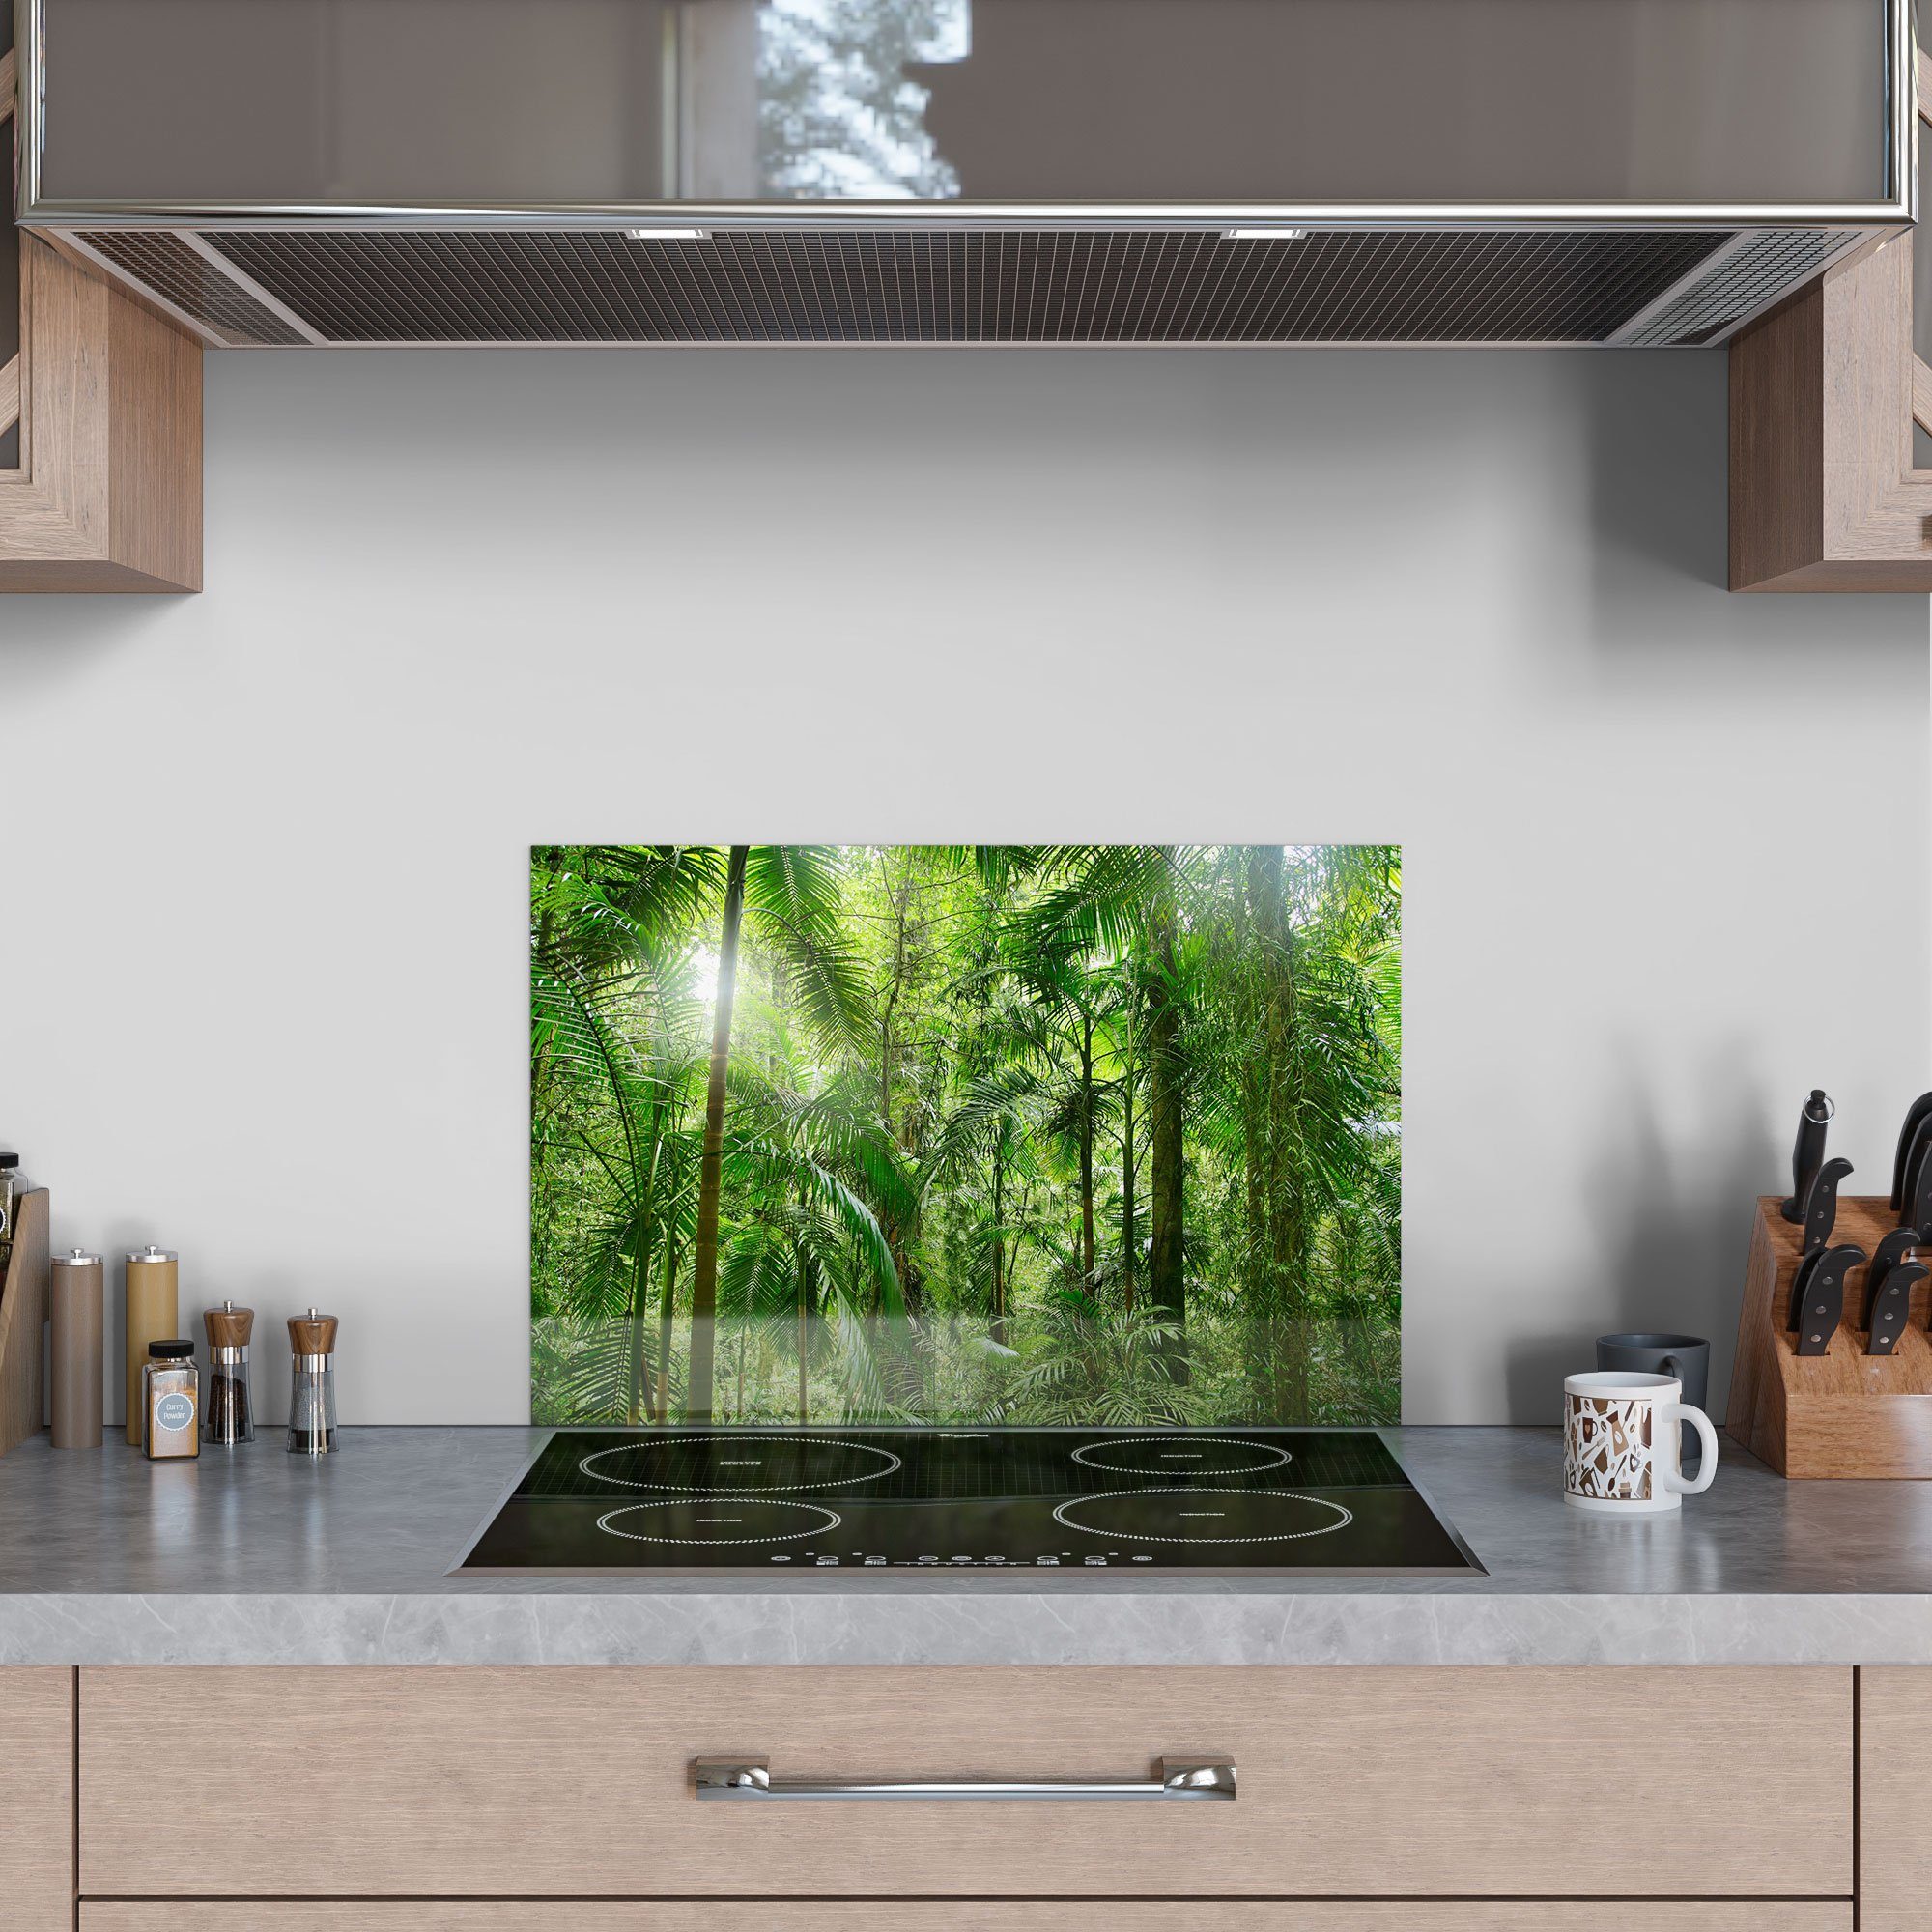 Dschungel', Glas Herdblende Spritzschutz DEQORI im Küchenrückwand Badrückwand 'Mitten